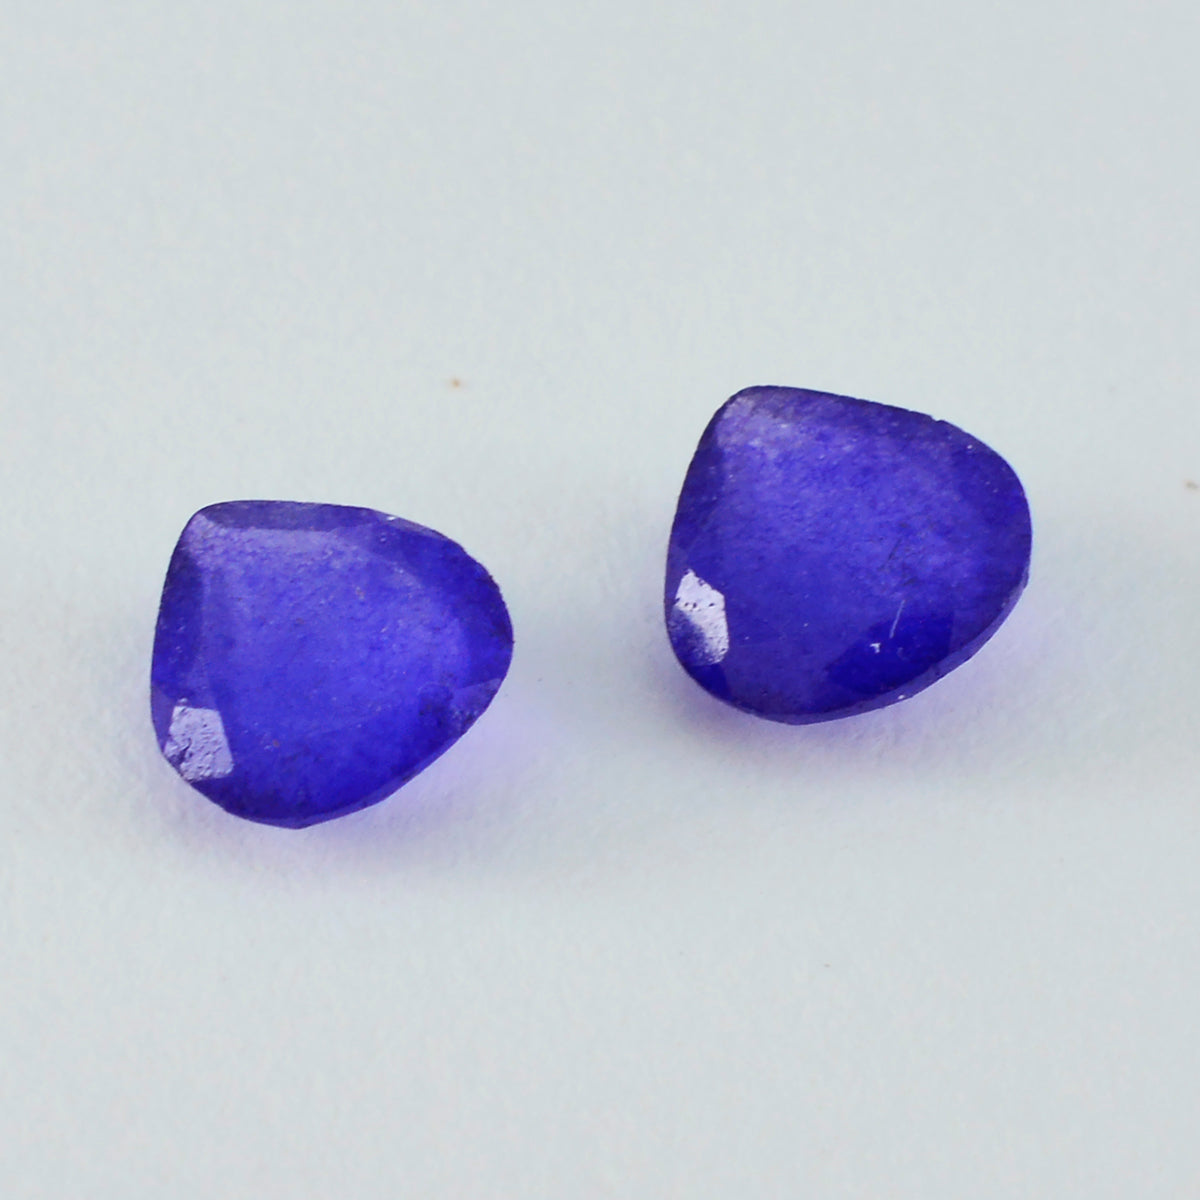 Riyogems 1 Stück echter blauer Jaspis, facettiert, 13 x 13 mm, Herzform, Schönheitsqualität, lose Edelsteine